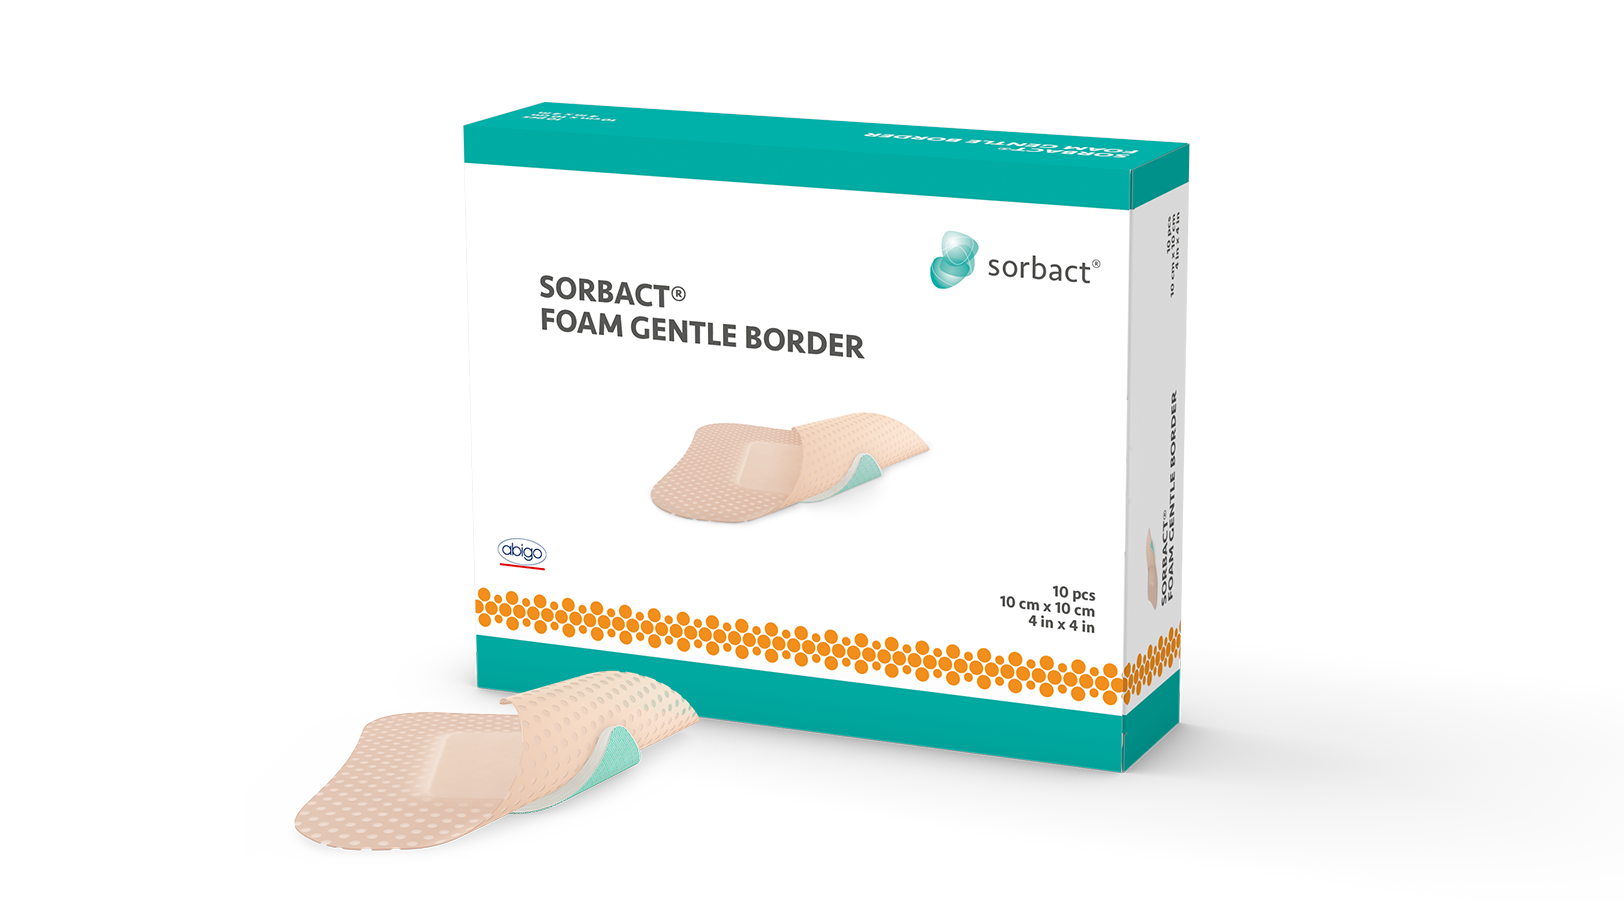 sorbact-foam-gentle-border-1624x901-2020